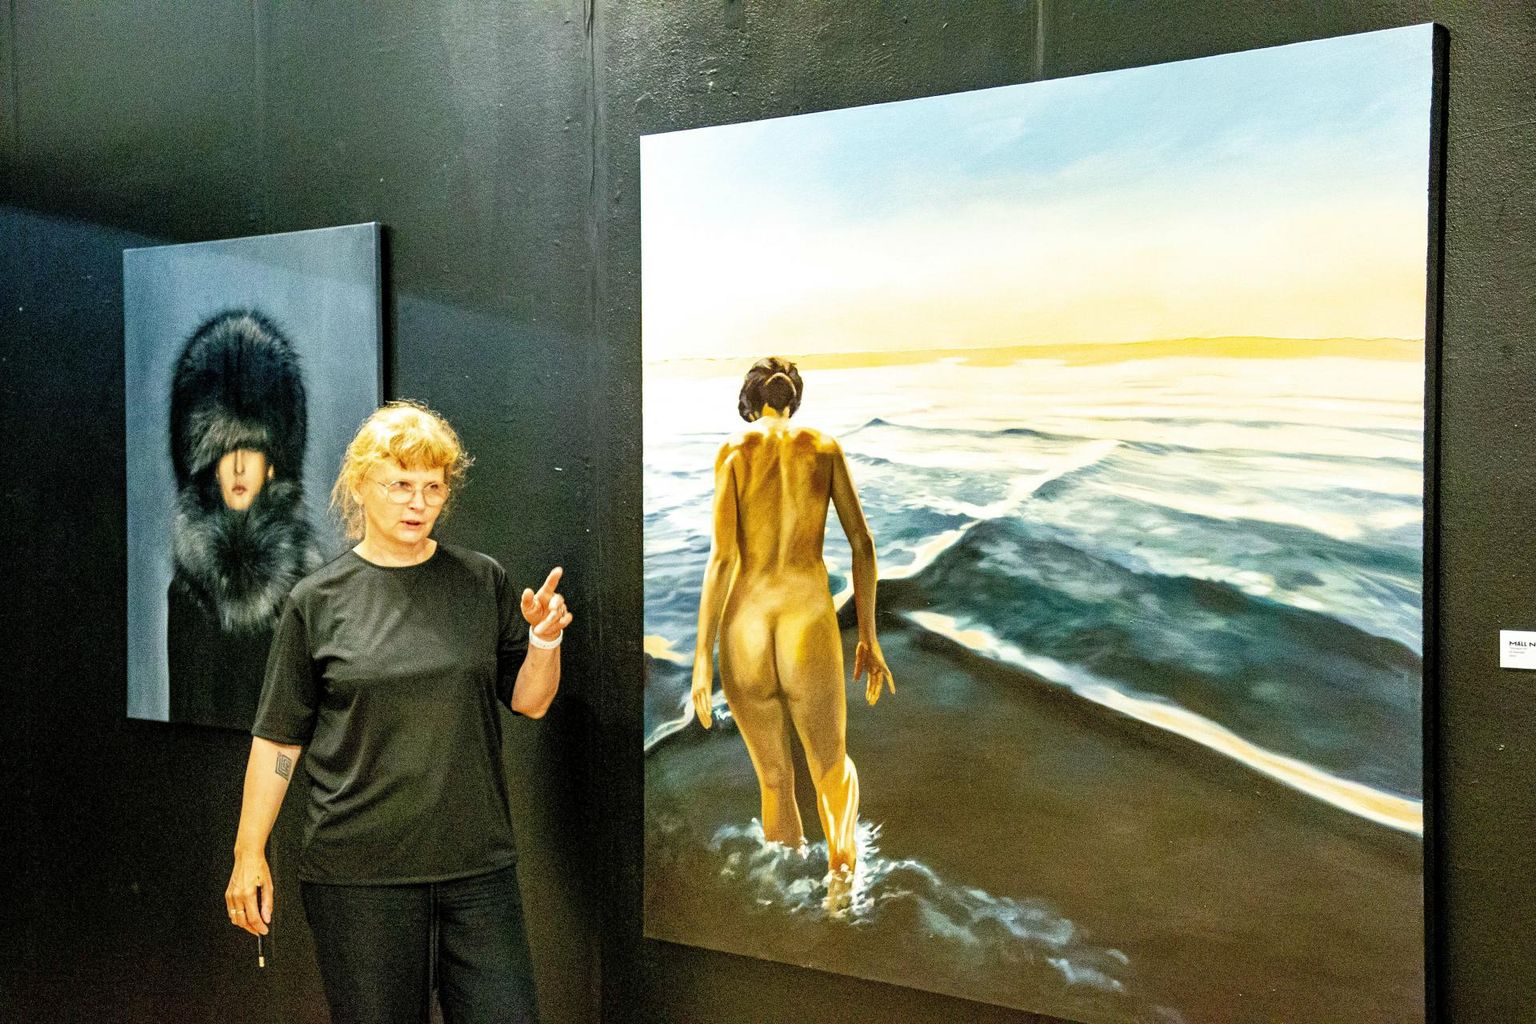 Näituse «7 kunstnikku. Keha» üks kuraatoreid on Mall Nukke, kelle vasakul küljel on tema enda maal «Silmapiir III» ja selja taga Mauri Grossi «Metsik».